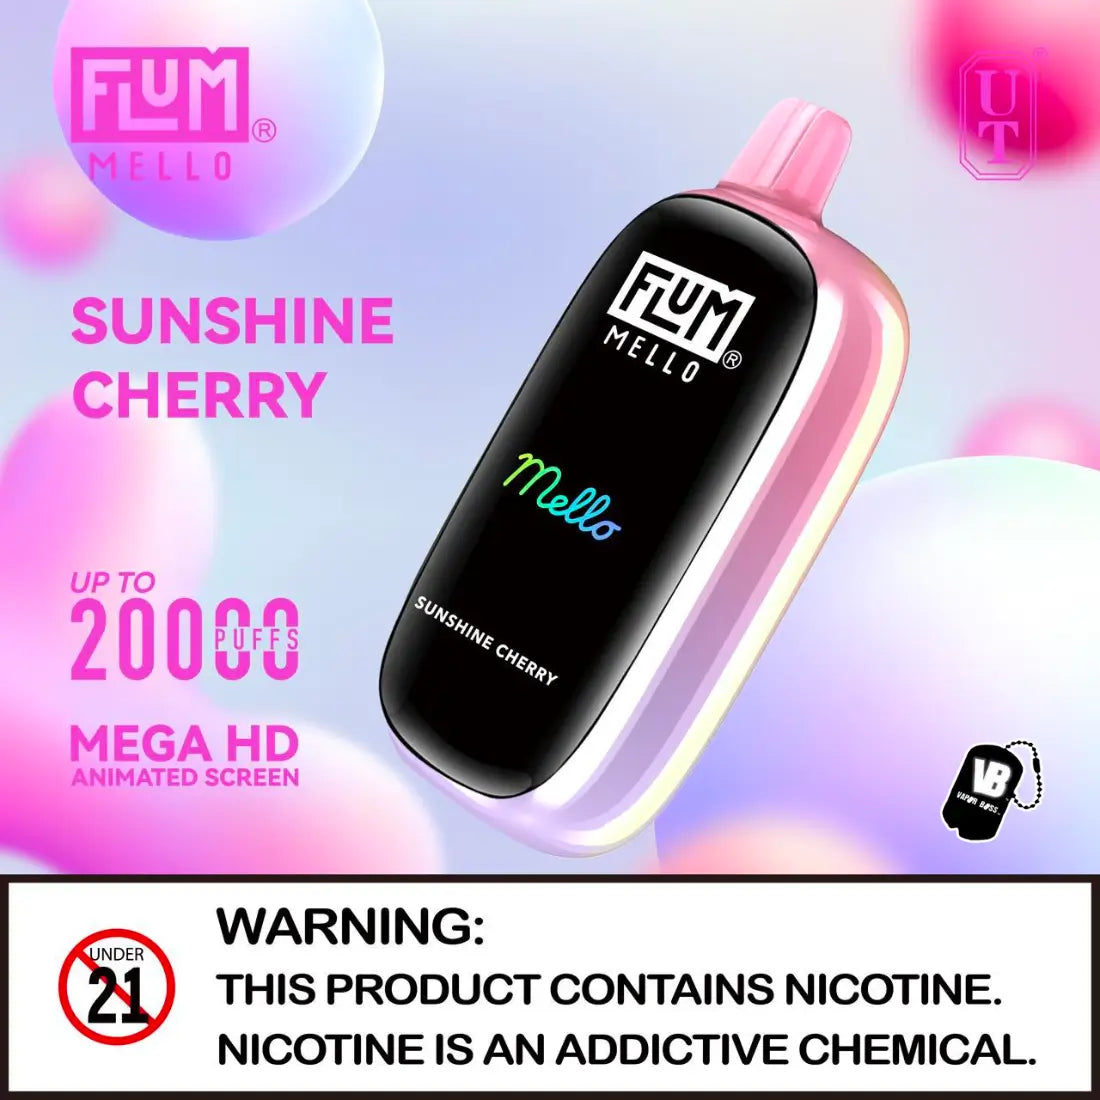 Flum Mello Sunshine Cherry